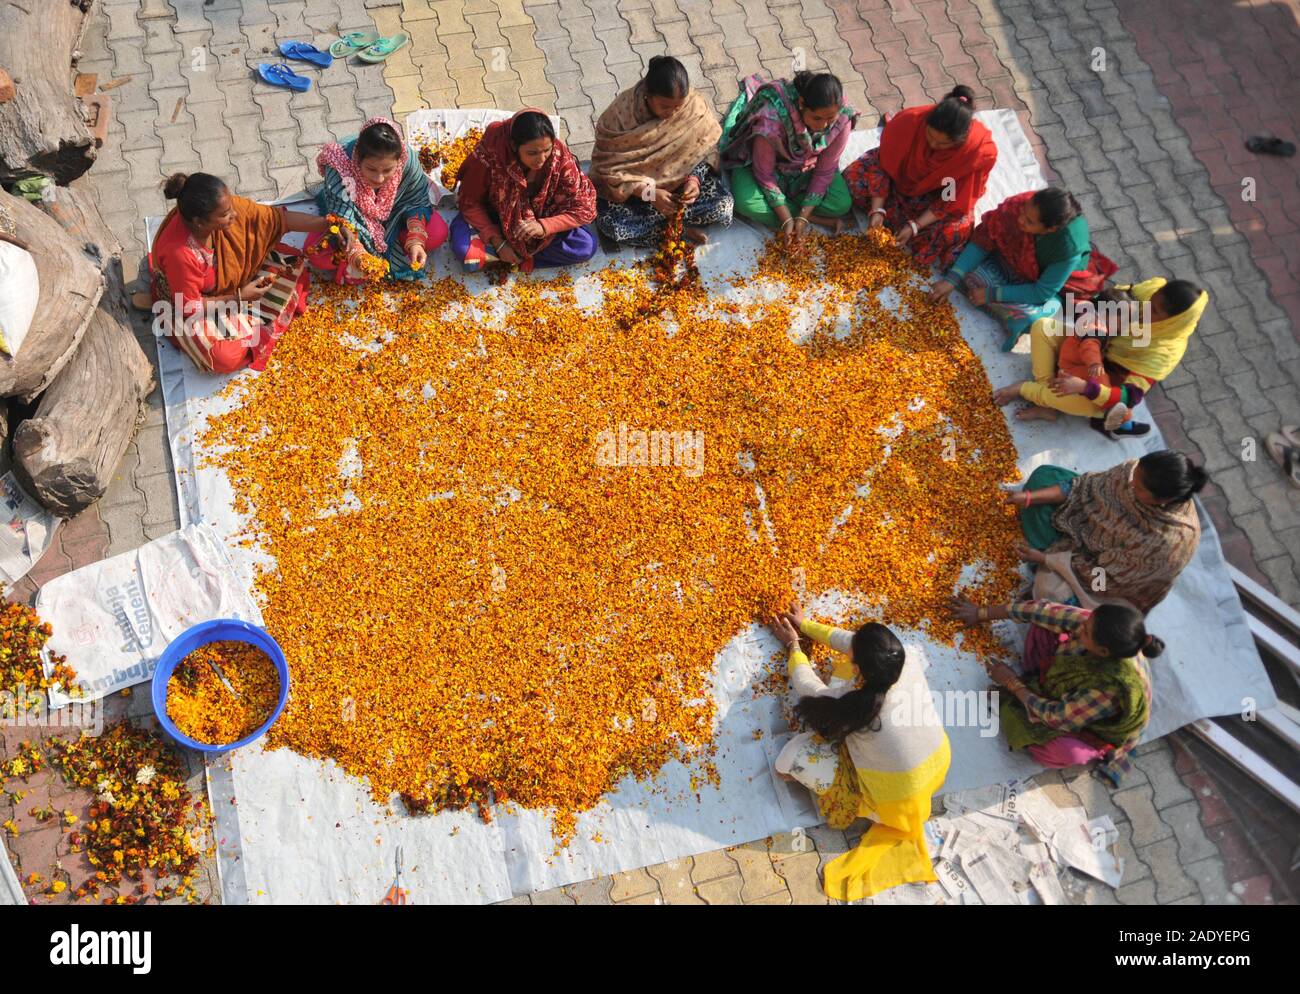 (191205) - Jammu, Dez. 5, 2019 (Xinhua) - Frauen arbeiten in einem Workshop, wie sie die verschiedenen Aufgaben der auswahloptionsfenster durchführen, Schneiden, Trocknung und Verarbeitung blumen Räucherstäbchen in Jammu, der Winter, die Hauptstadt der Indischen zu machen - Kaschmir gesteuert, am Dez. 5, 2019. Die Blumen gesammelt aus verschiedenen Tempel und Schreine sind Räucherstäbchen vorgenommen werden, während früher, die Blumen waren in Tawi Fluss und Ranbir Kanal entleert. Die Idee wurde für zwei Zwecke des Haltens Tawi Fluss, Ranbir Kanal und andere Gewässer sauber durchgeführt, sowie eine menschenwürdige Beschäftigung für Frauen aus wirtschaftlich schwachen Stockfoto